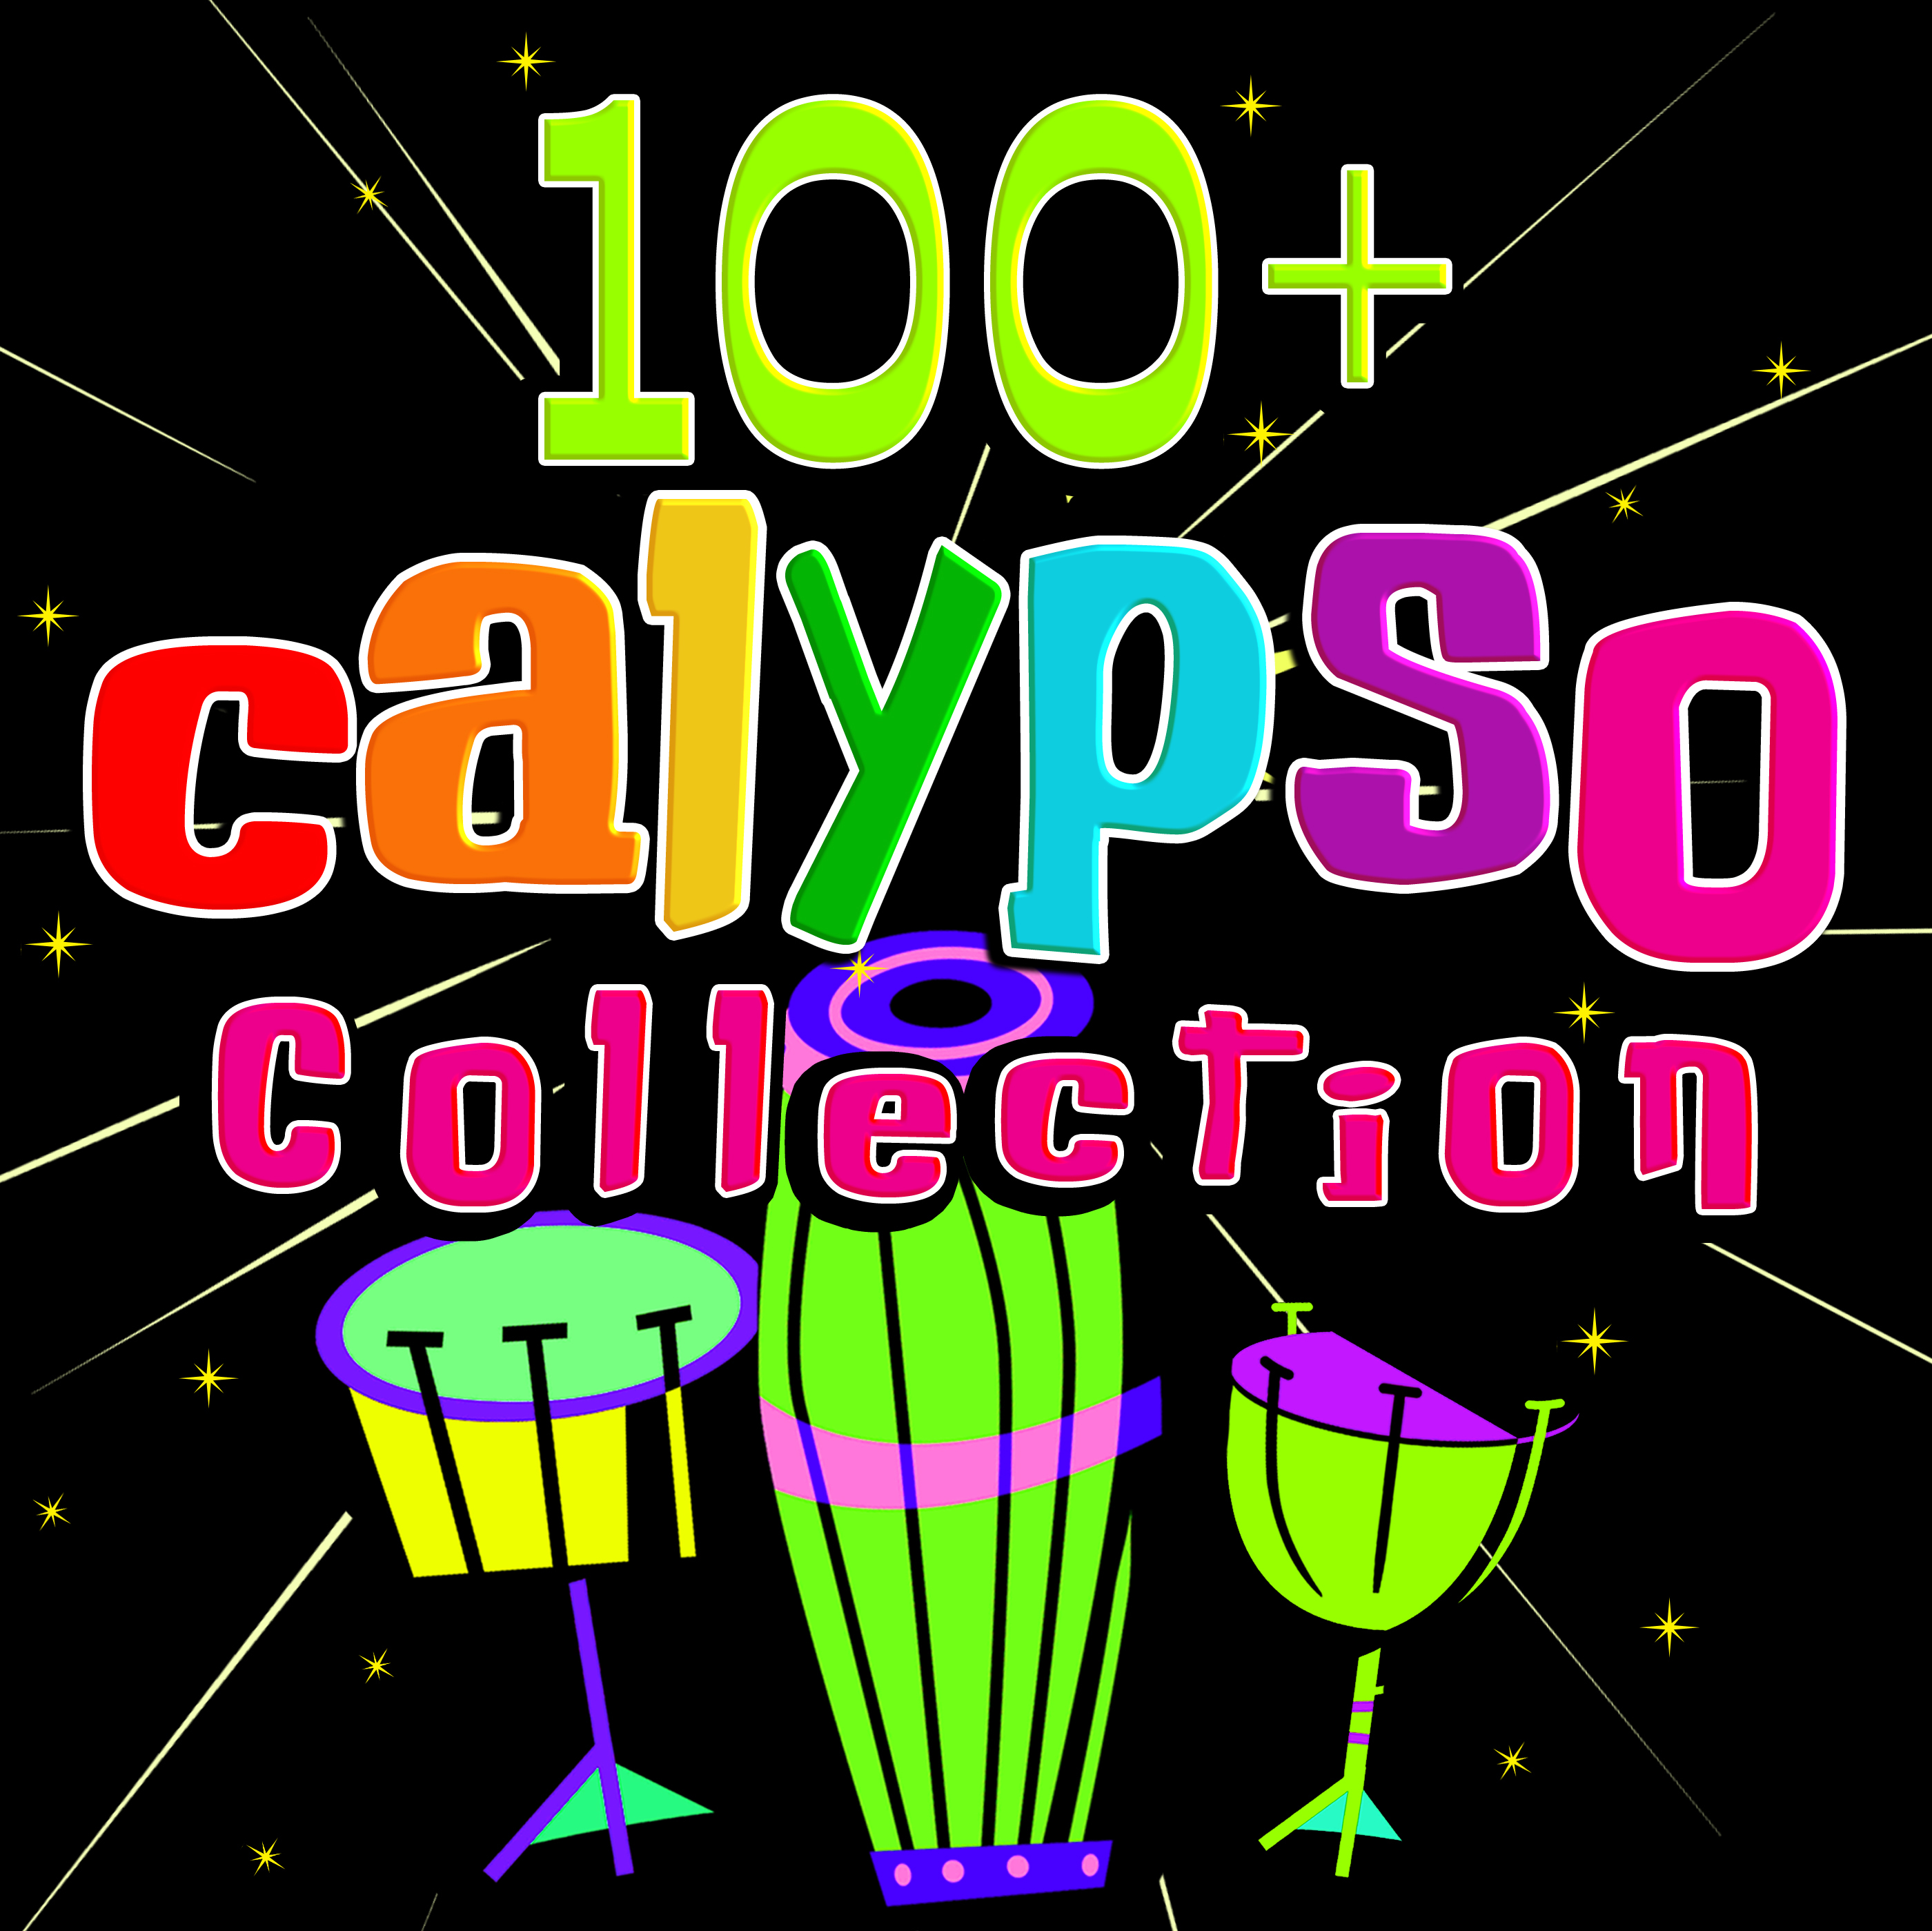 100+ Calypso Collection